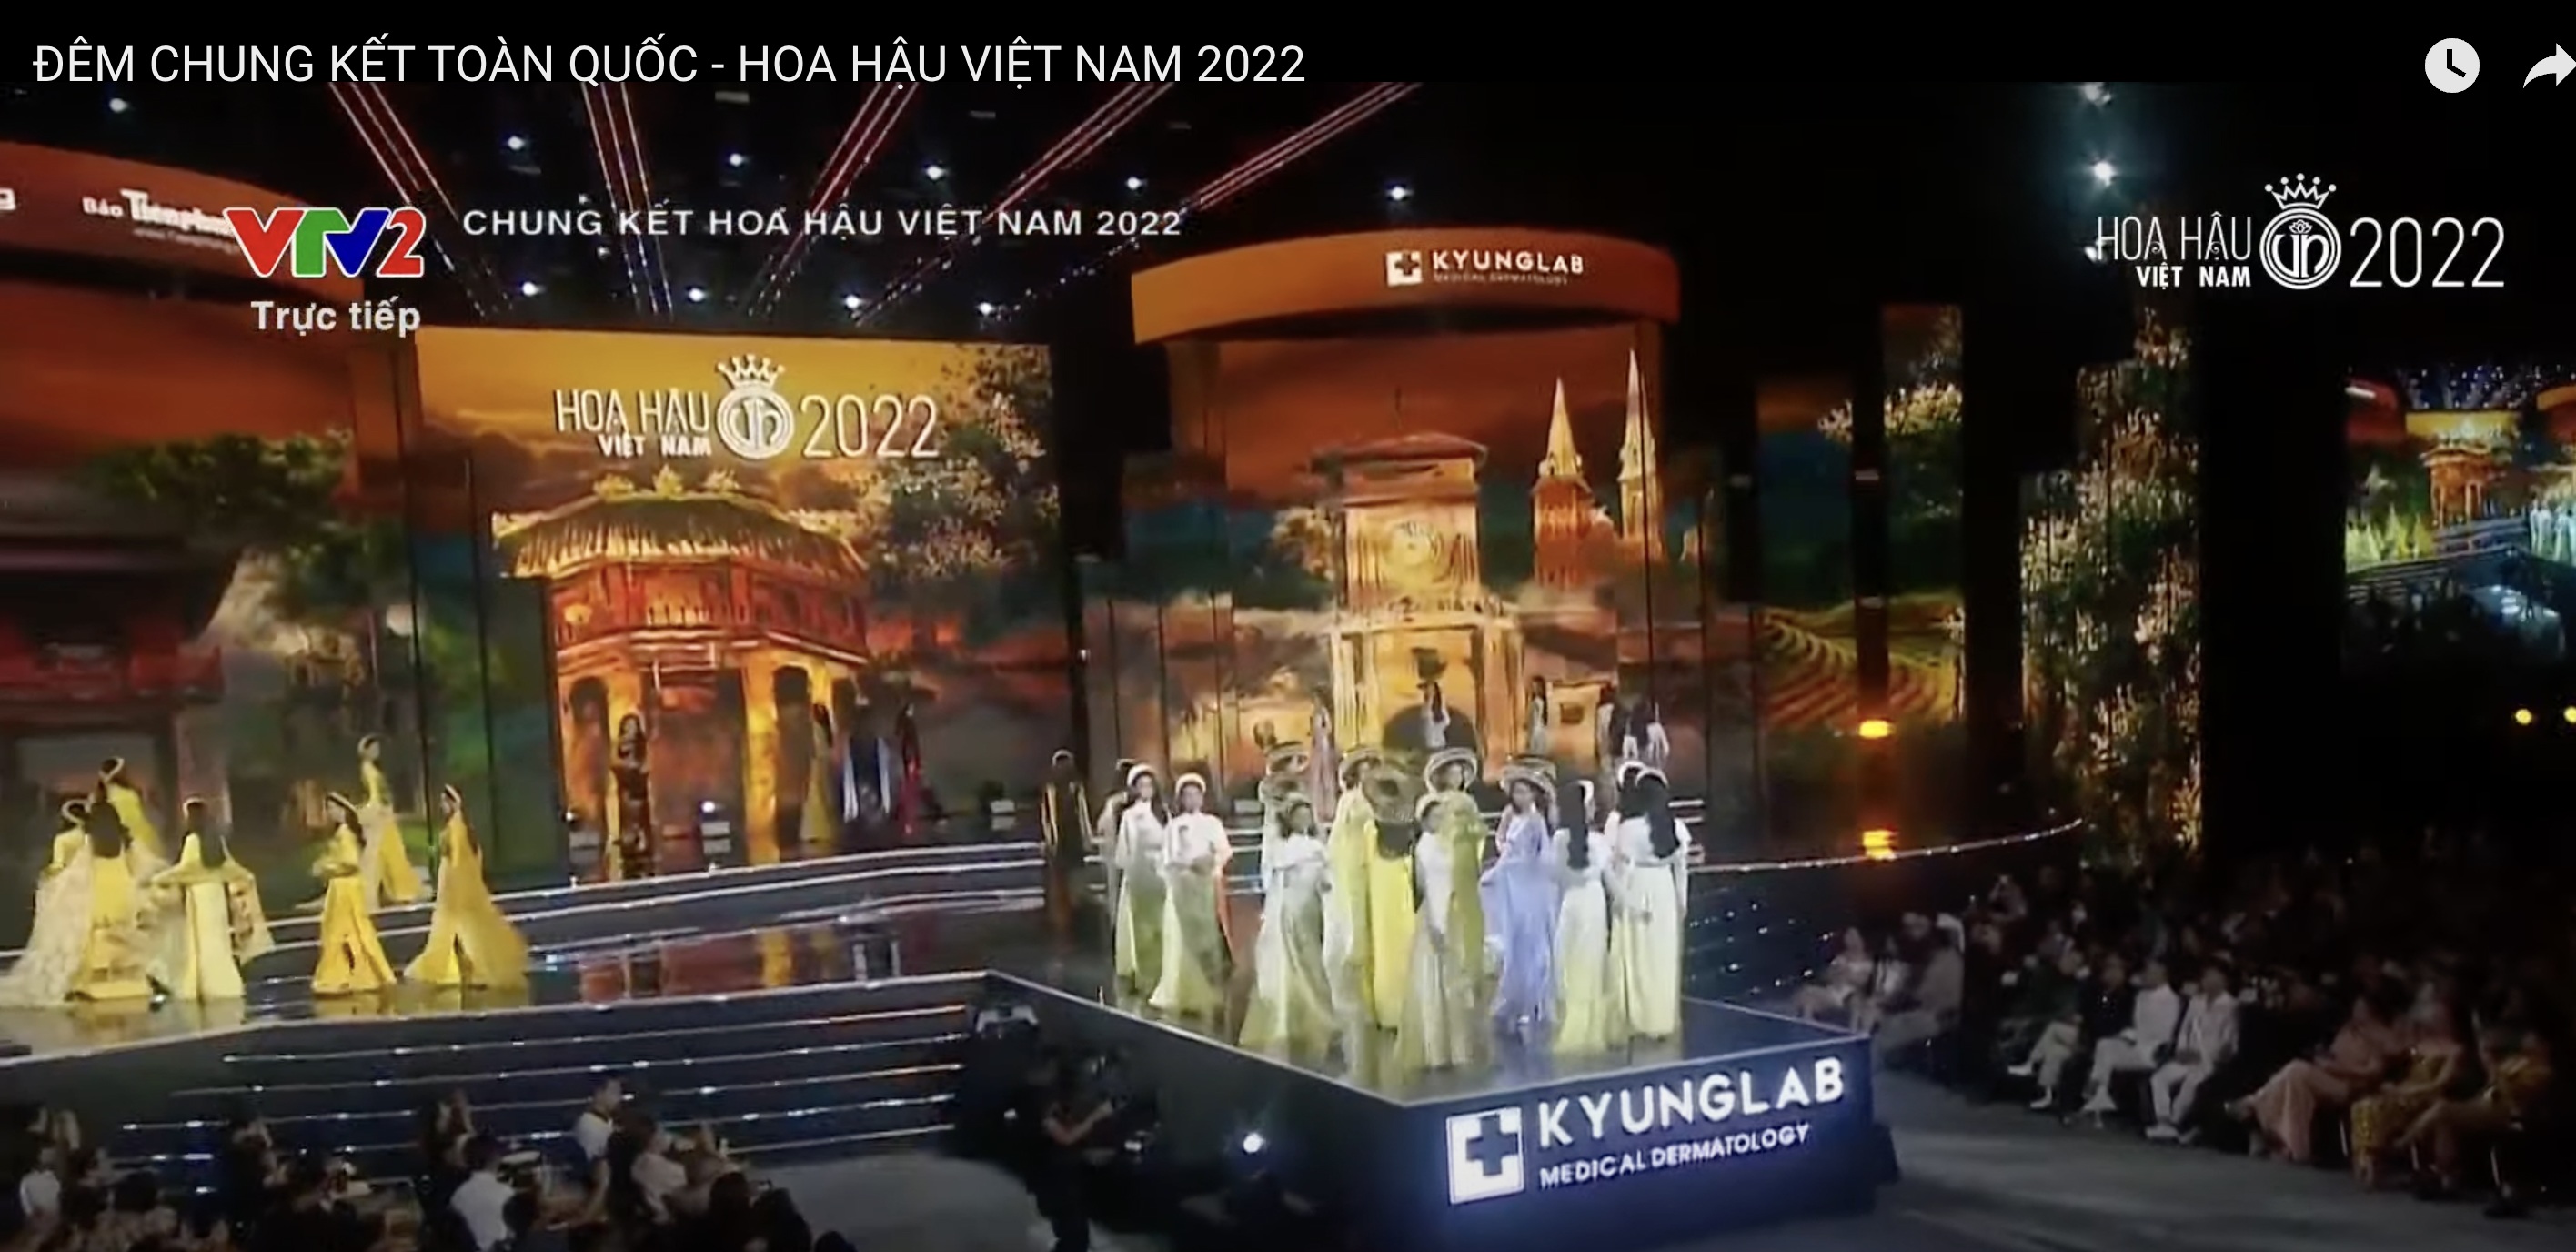 Chung kết Hoa hậu Việt Nam 2022: Tân Hoa hậu chính thức gọi tên Huỳnh Thị Thanh Thuỷ - 44